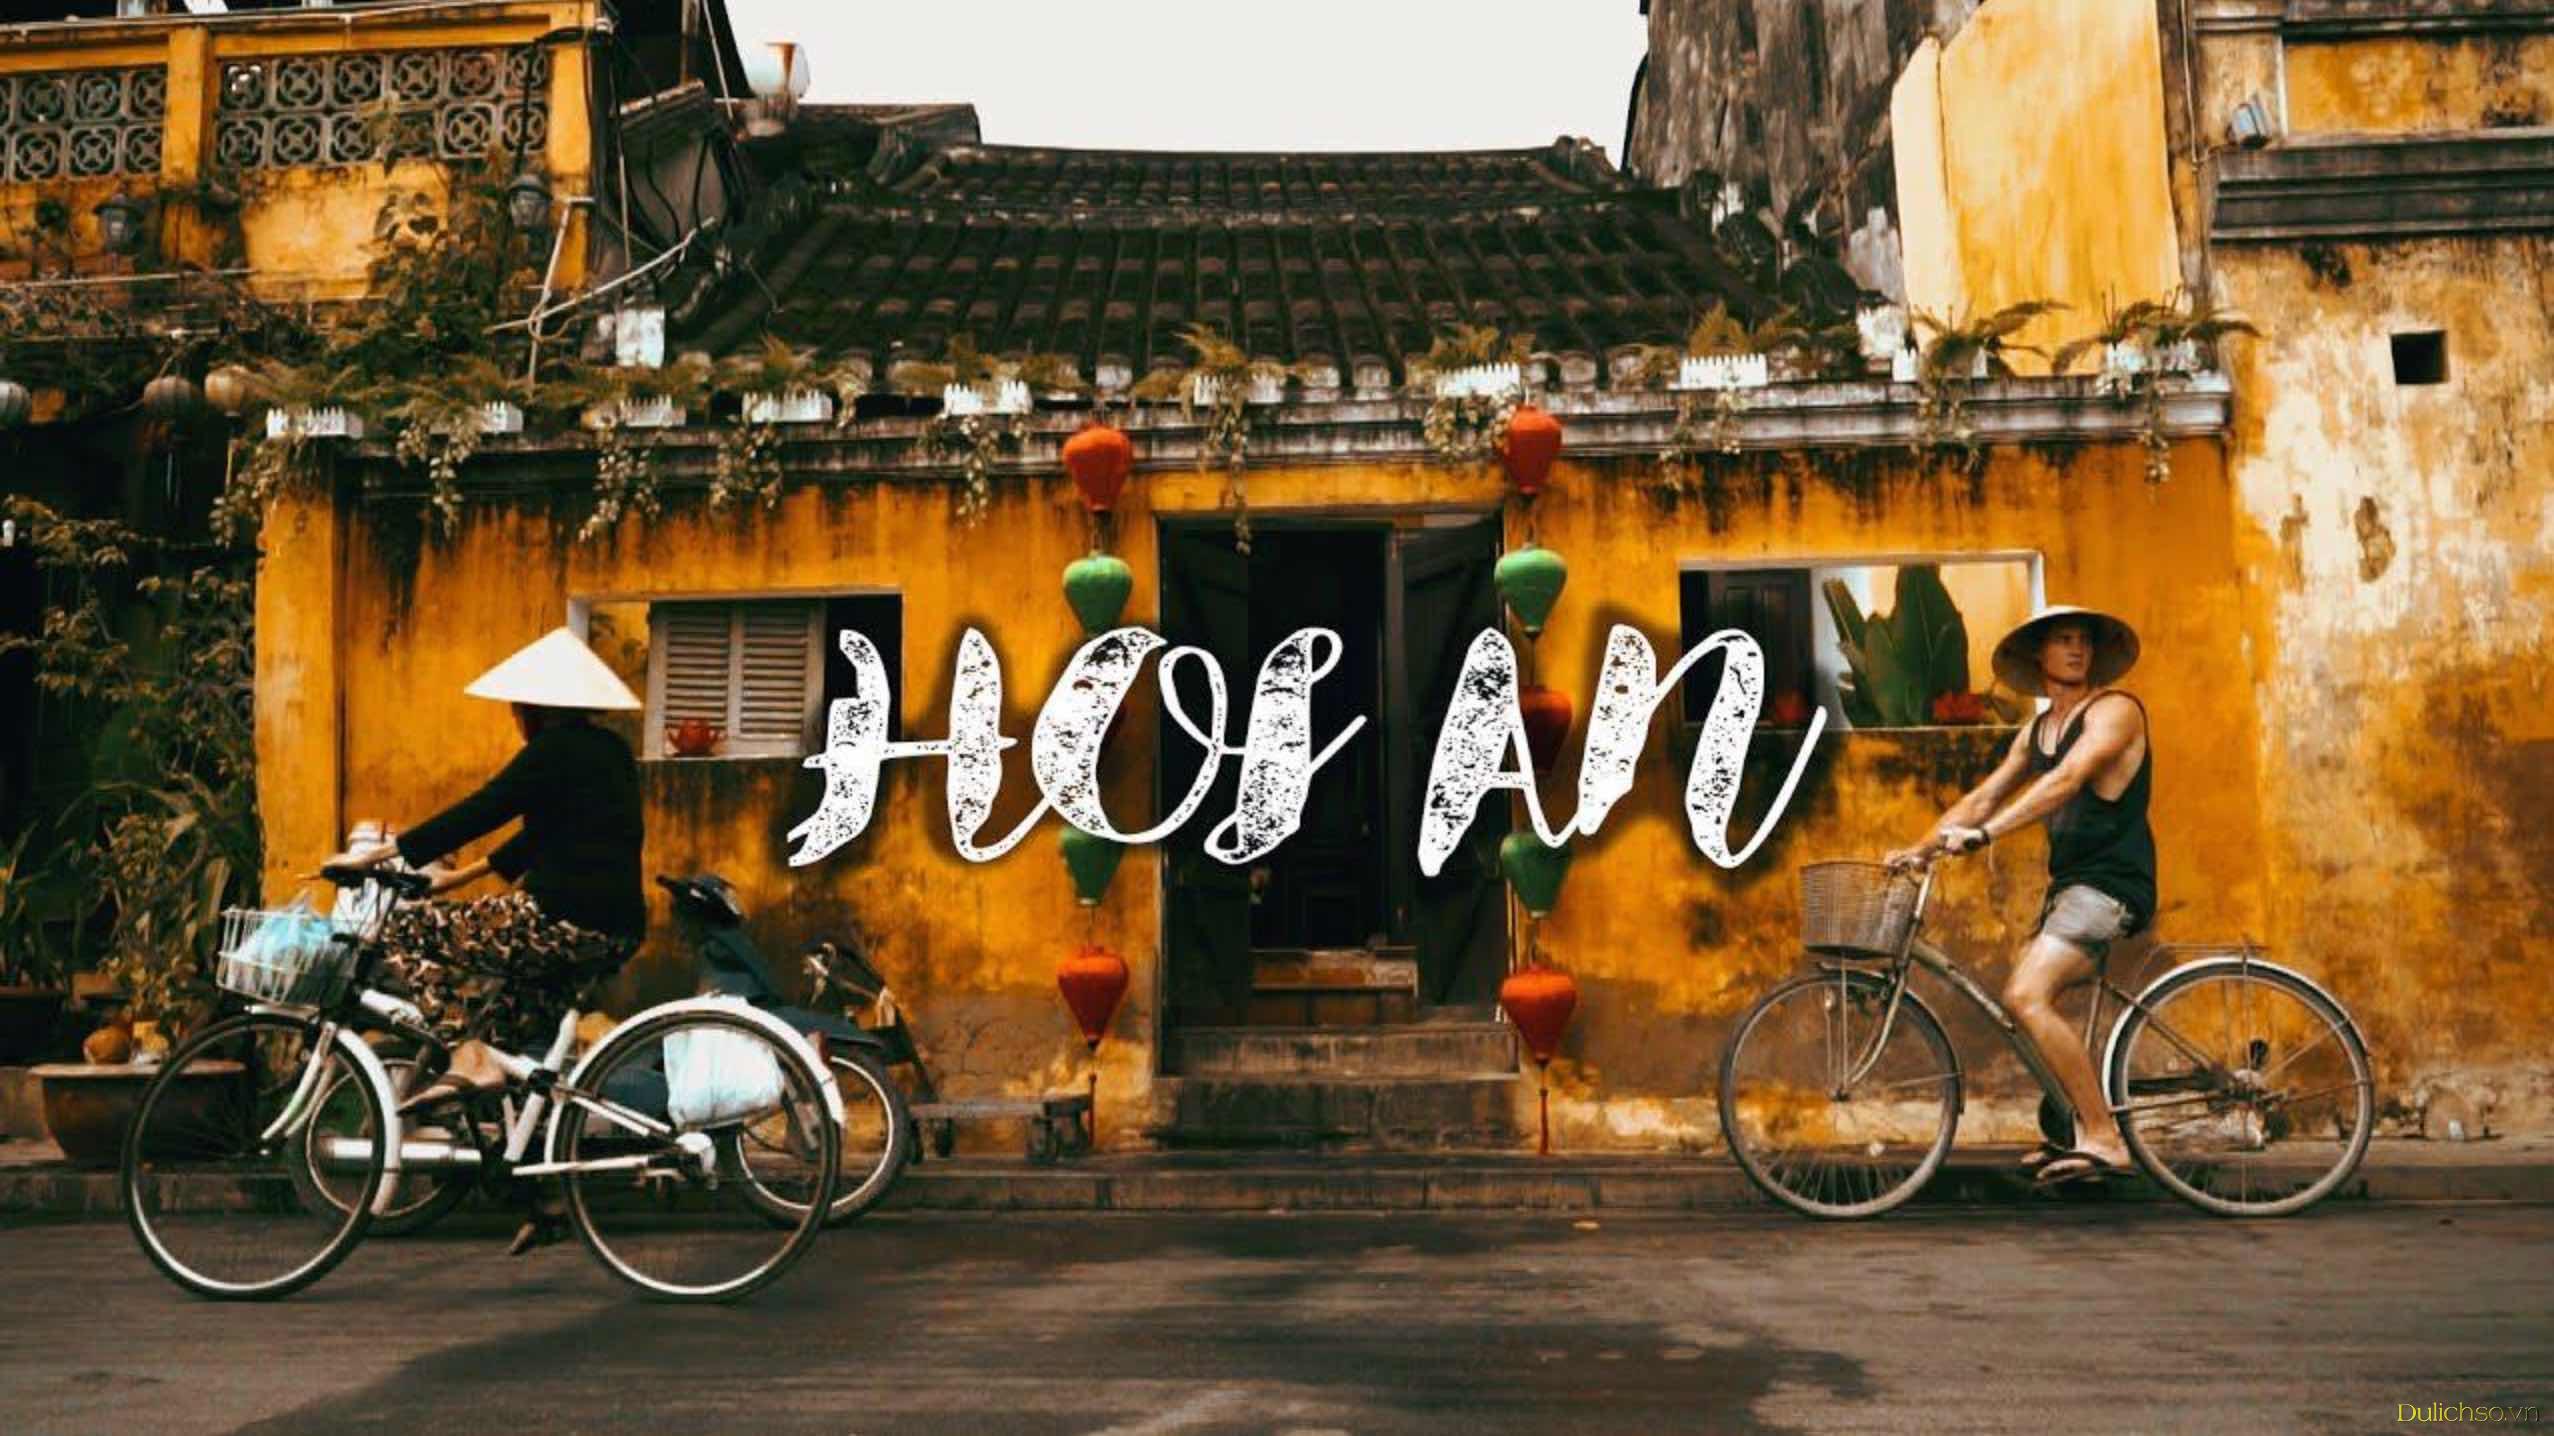 Du lịch Hè, Du lịch Việt Nam, Địa điểm du lịch